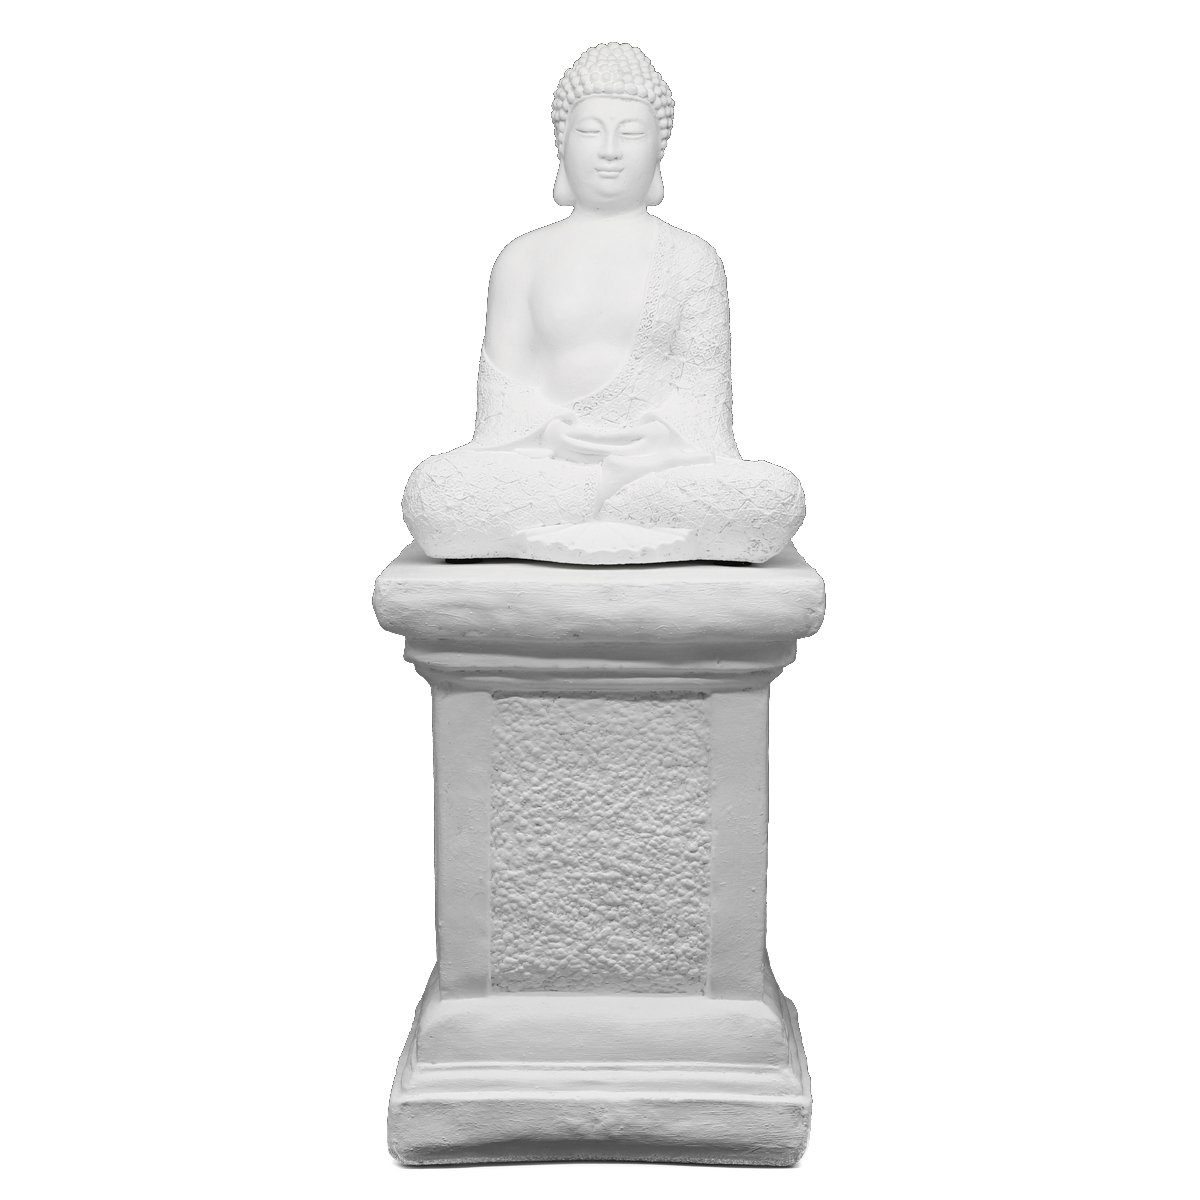 Tiefes Kunsthandwerk Buddhafigur Buddha weiß Figur Made aus winterfest, Germany Säule in mit - frostsicher, Stein Statue